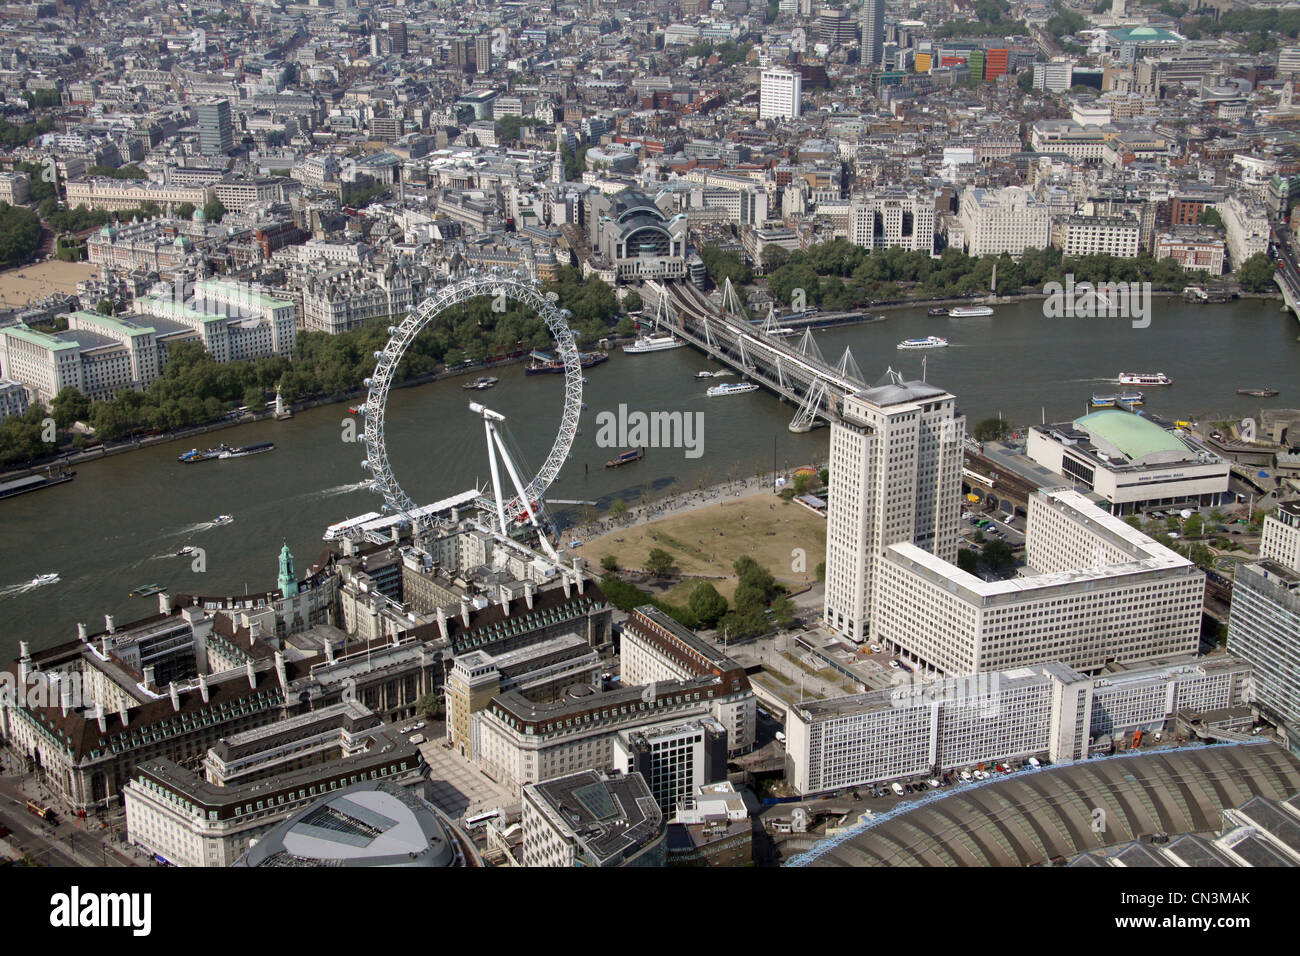 Vue aérienne de l'ancienne salle County, London Eye, Millennium Wheel, Jubilee Gardens, Londres Banque D'Images